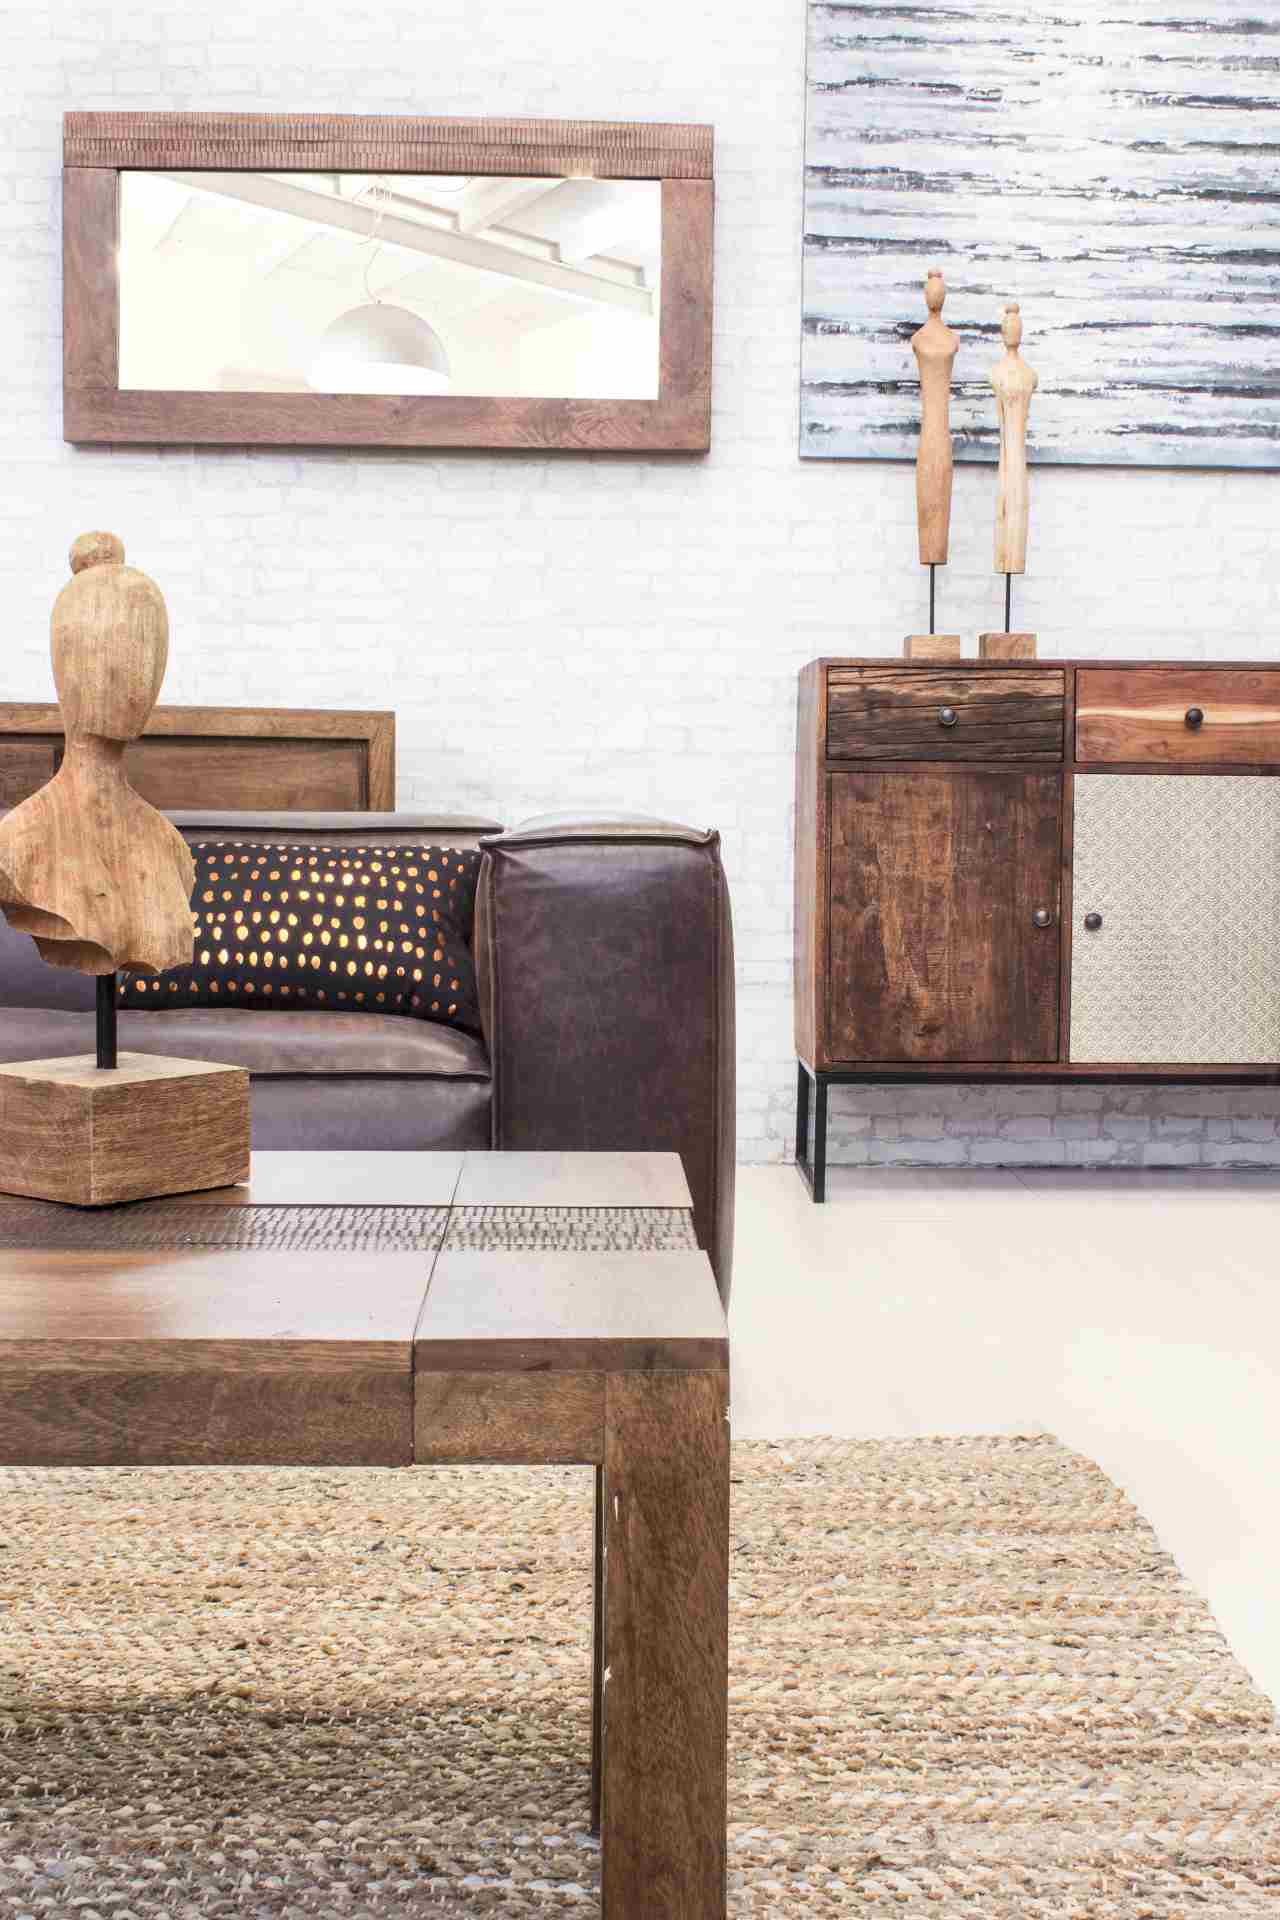 Das Sofa Dakota überzeugt mit seinem klassischen Design. Gefertigt wurde es aus Kunstleder, welches einen braunen Farbton besitzt. Das Gestell ist aus Eichenholz und hat eine natürliche Farbe. Das Sofa ist in der Ausführung als 2-Sitzer. Die Breite beträg